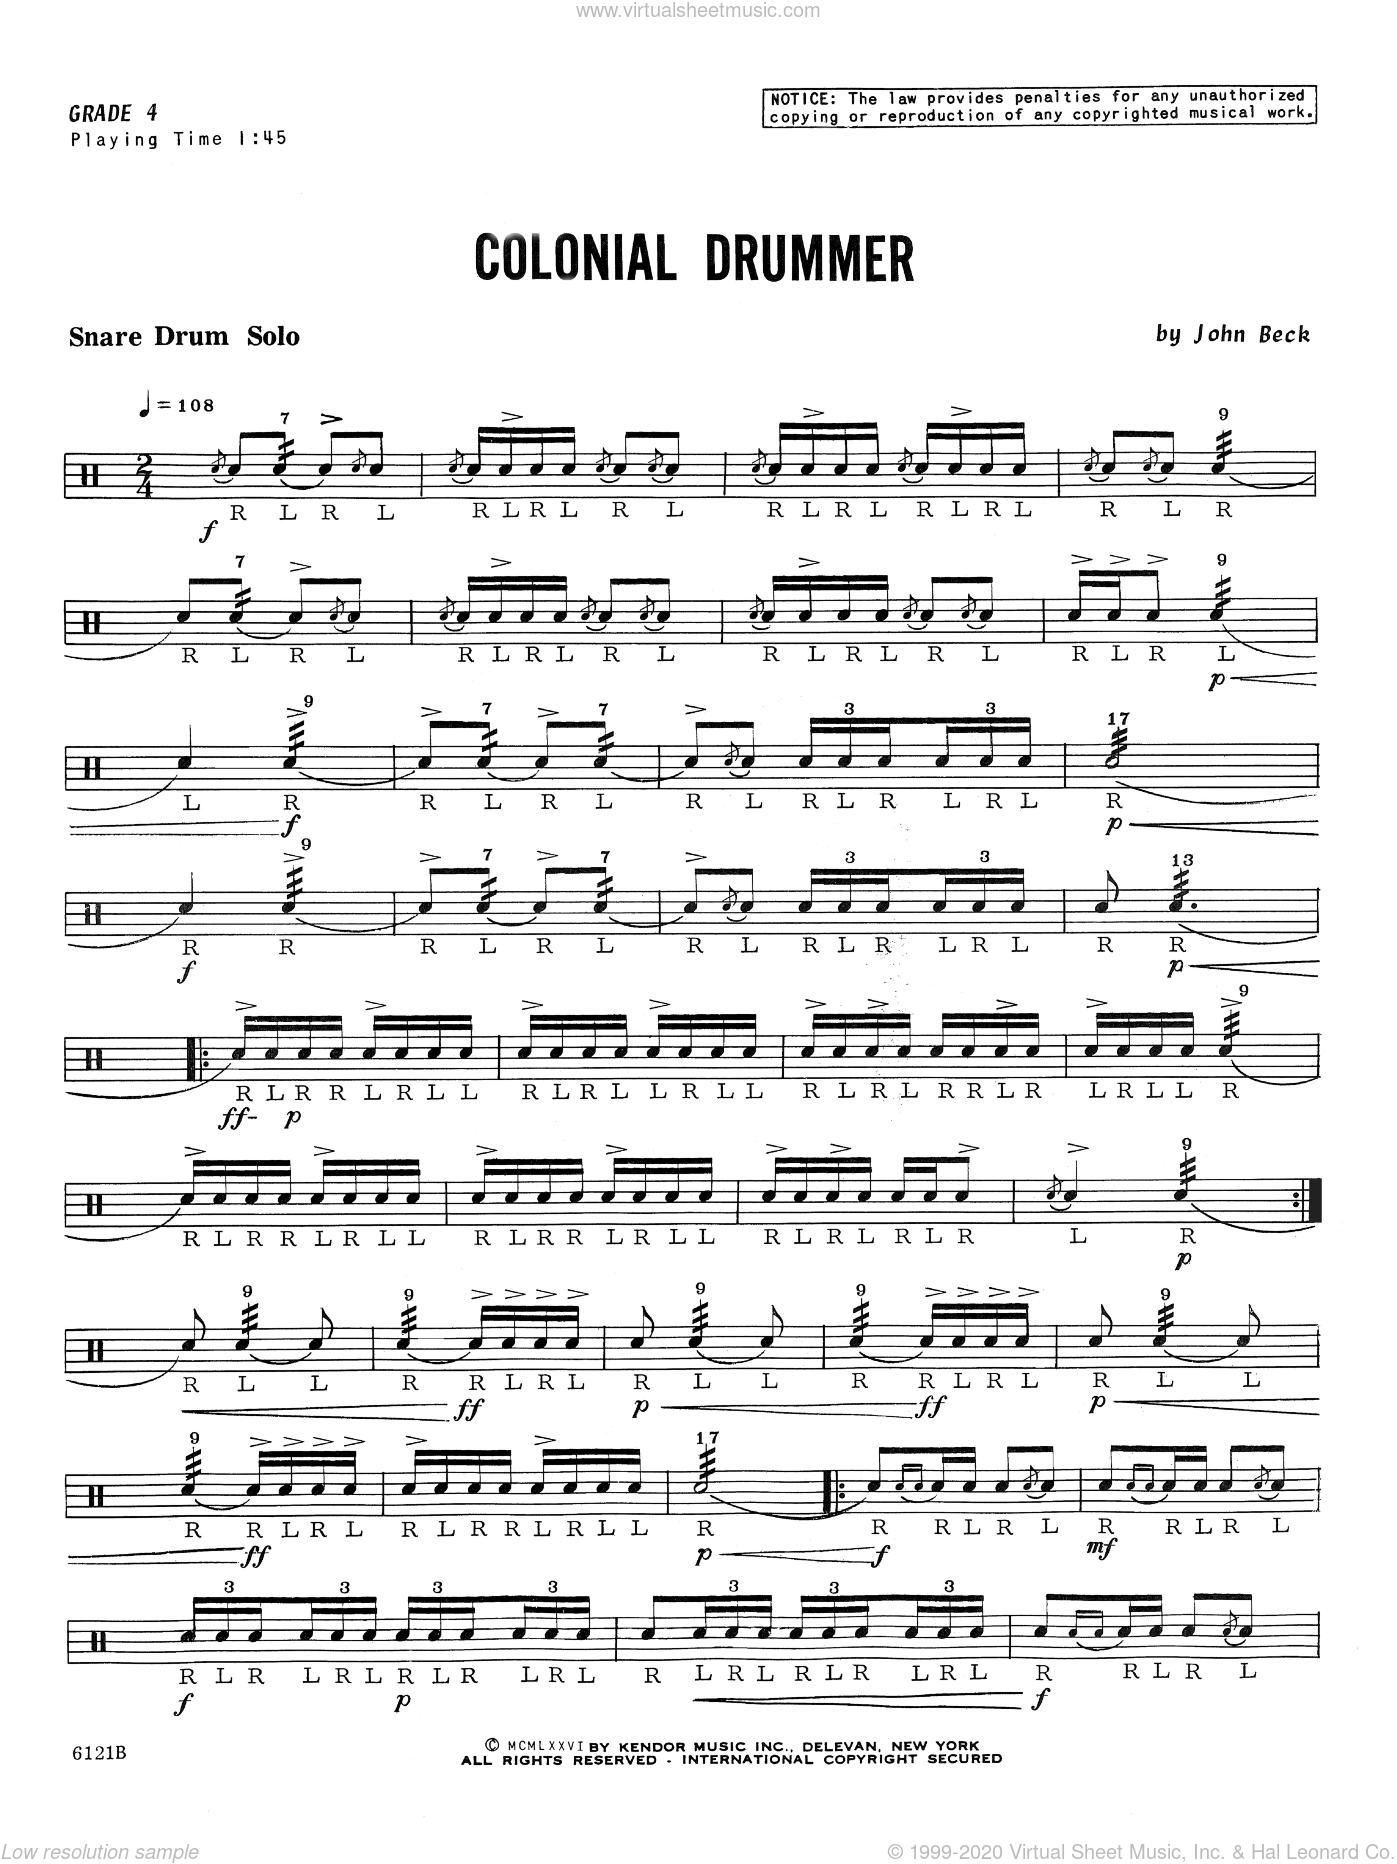 Free drum sheet music pdf